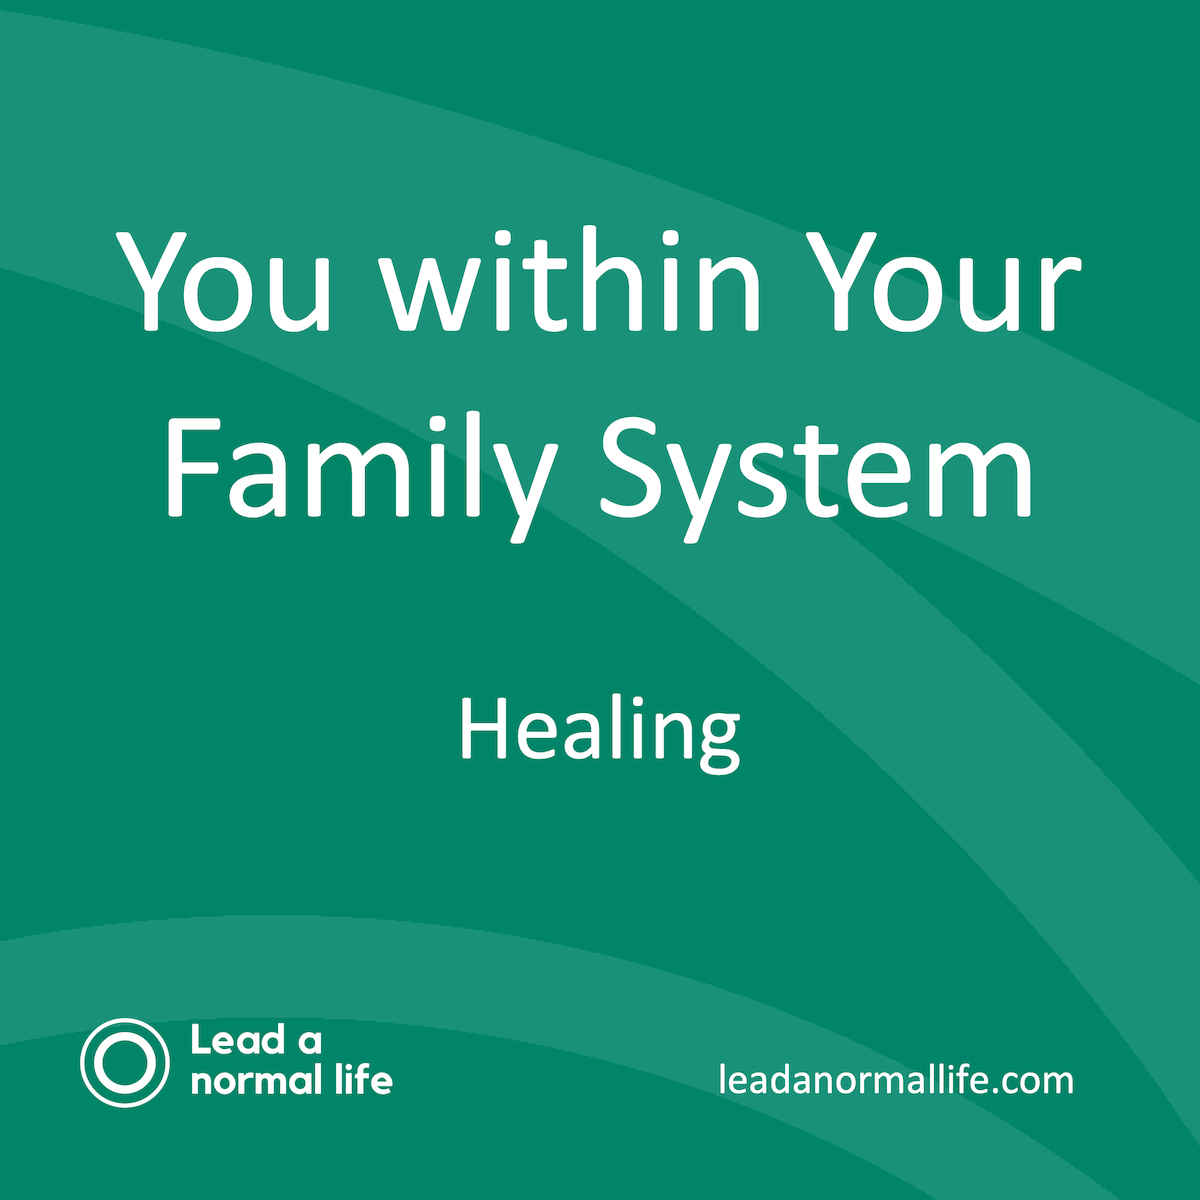 Jij en jouw familiesysteem | online sessie, incl. healing | On demand: kijken wanneer het jou uitkomt